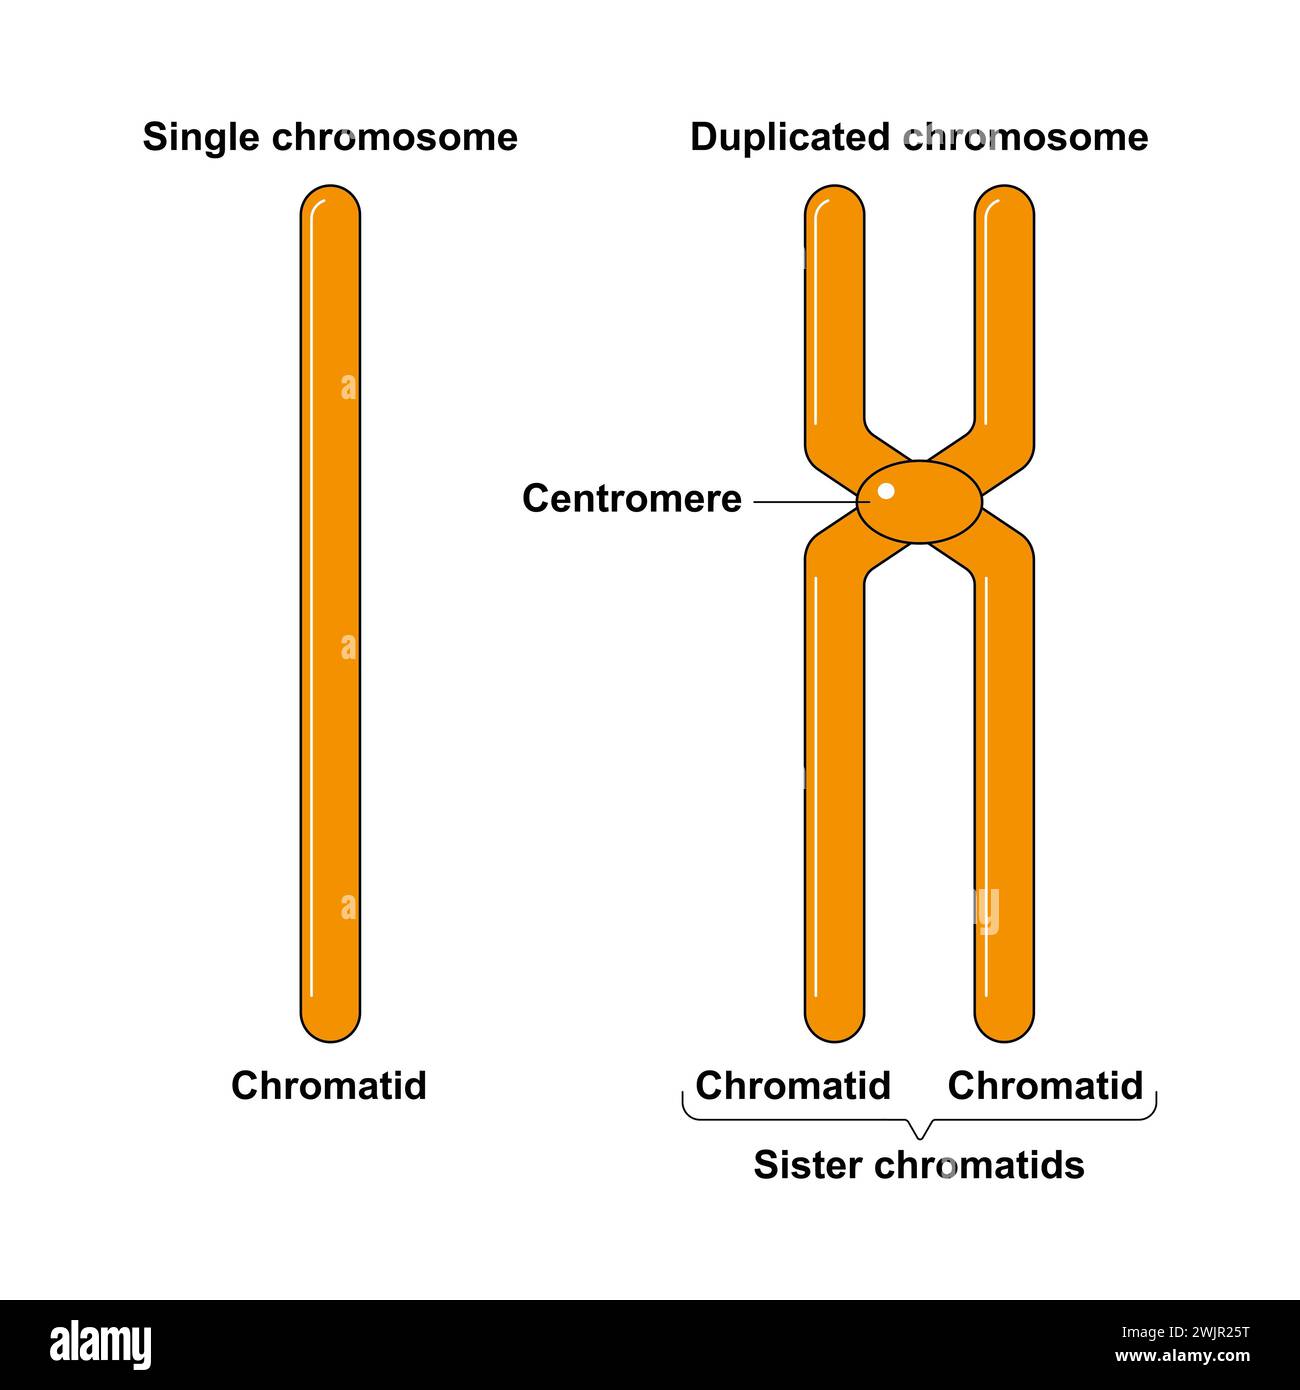 Single and duplicated chromosome, illustration Stock Photo